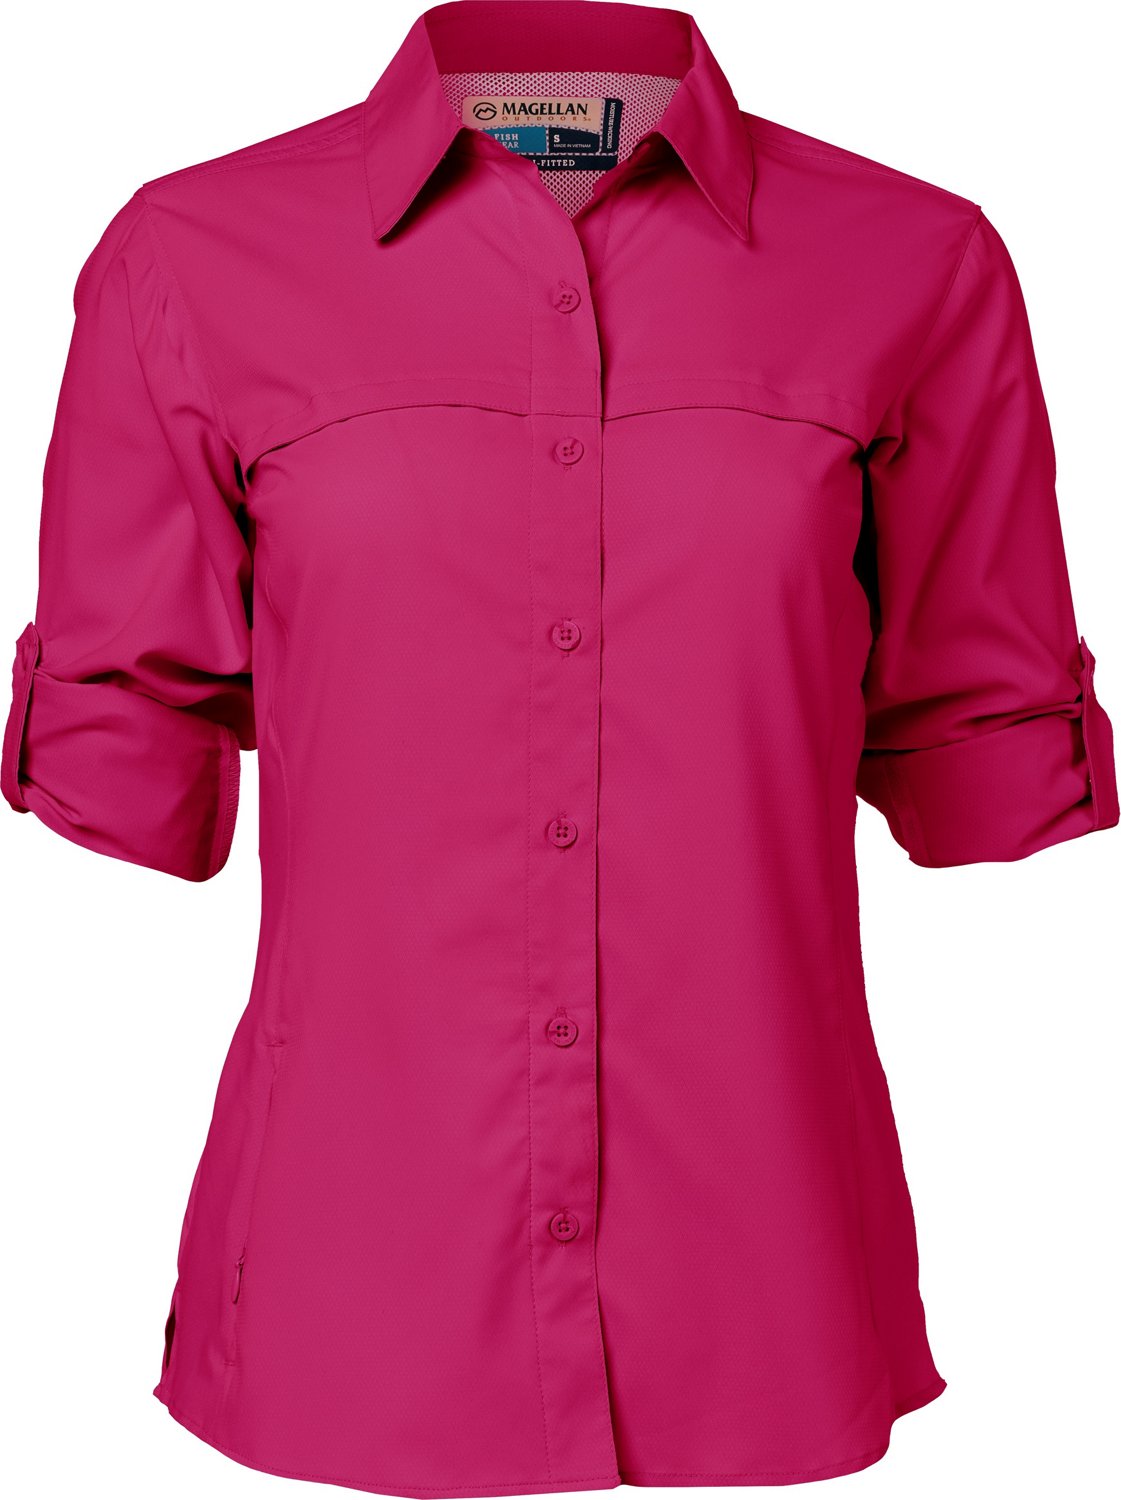 Ladies Magellan Pink fishing shirt Xl